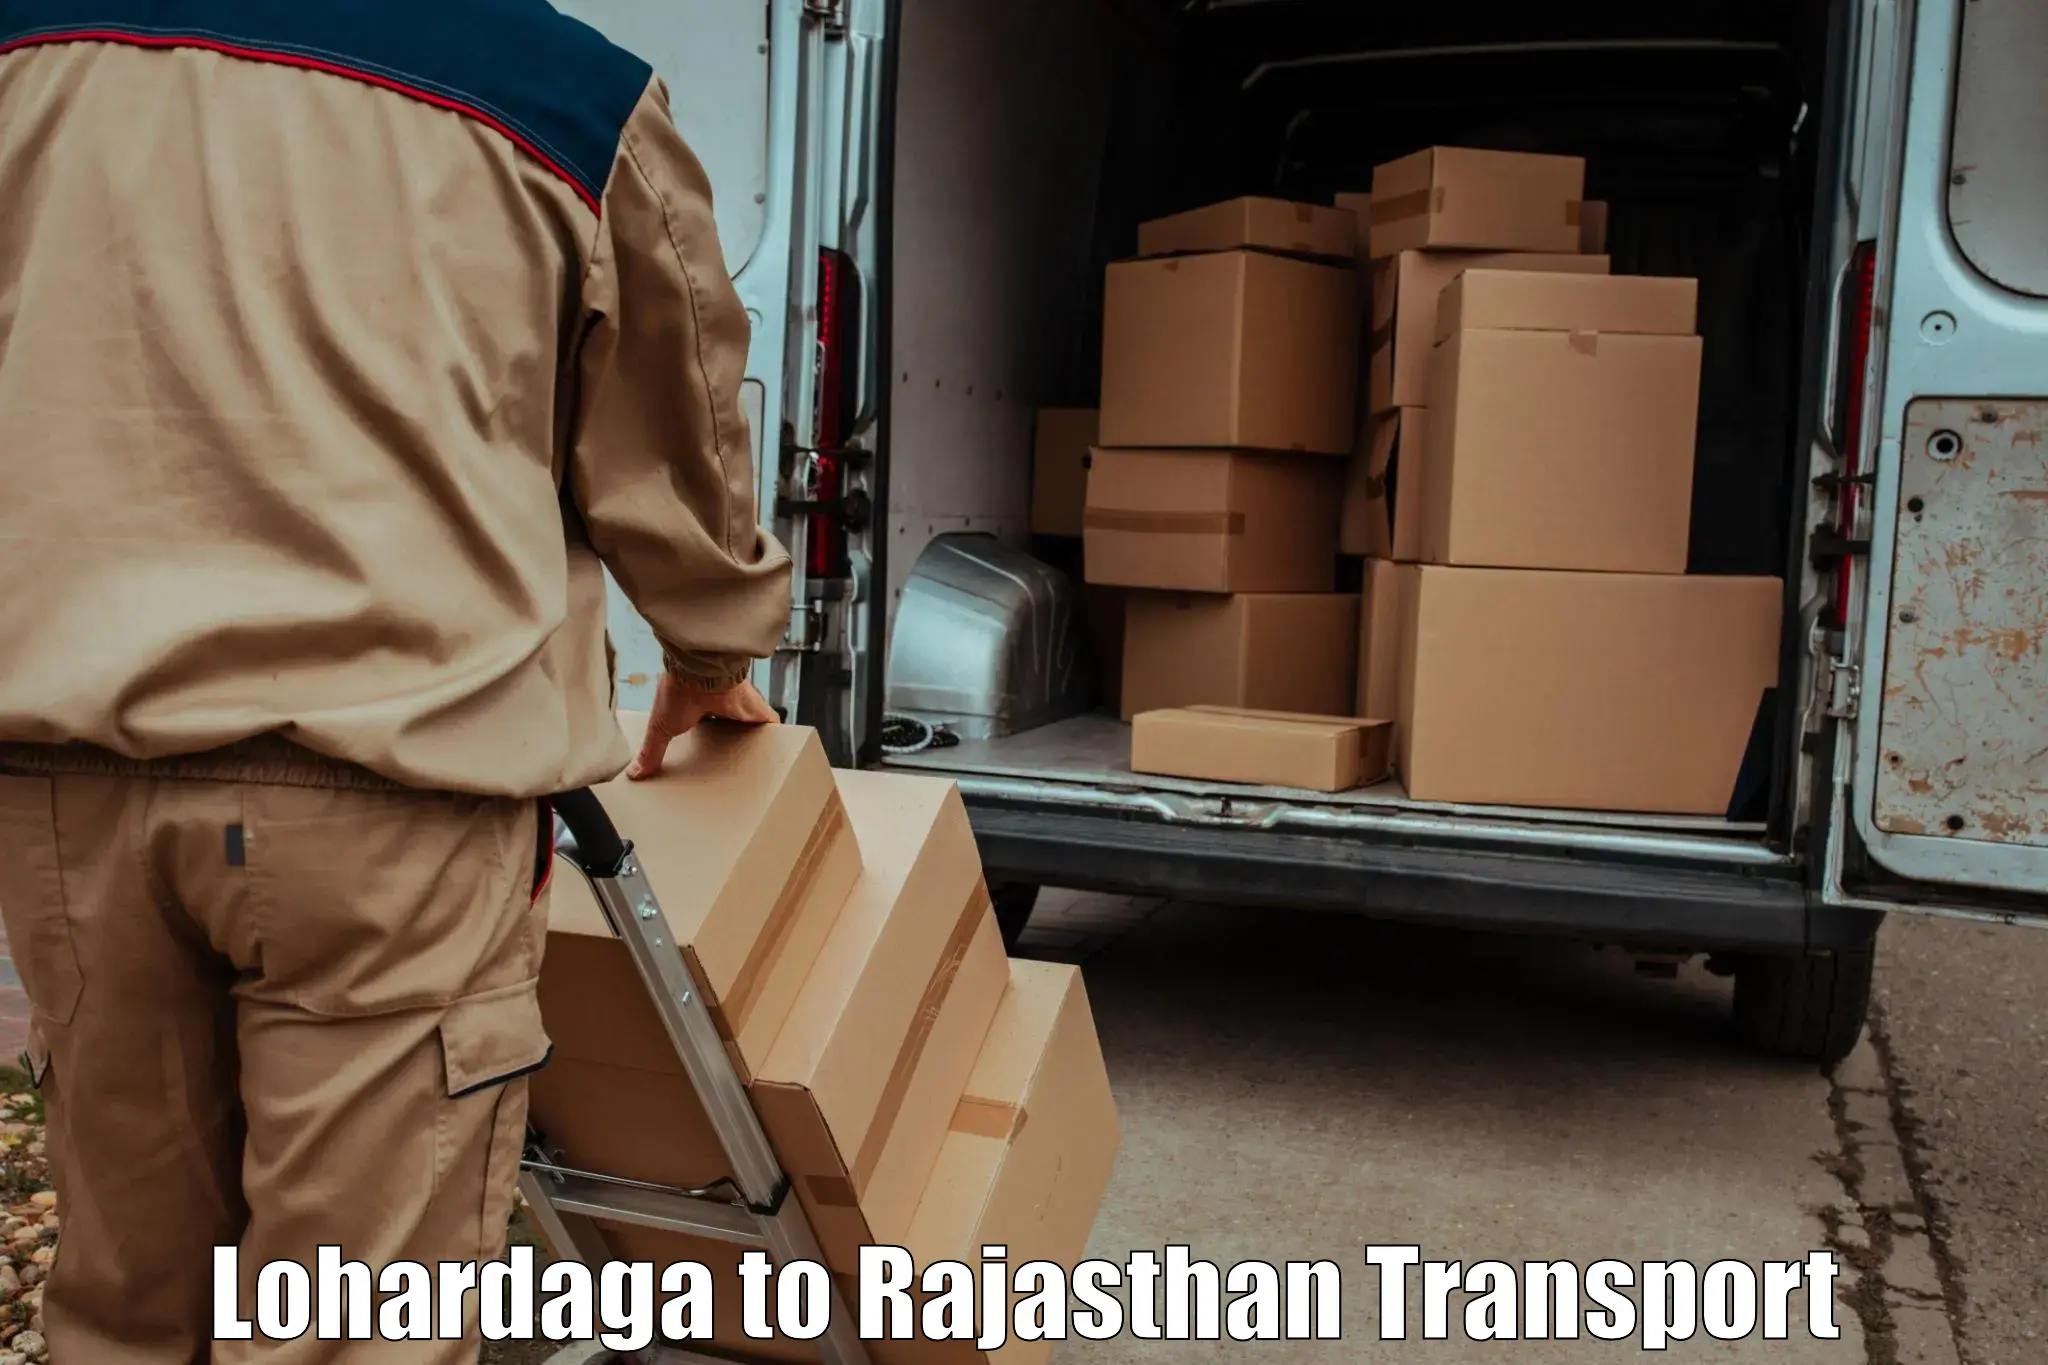 Air freight transport services in Lohardaga to Pratapgarh Rajasthan